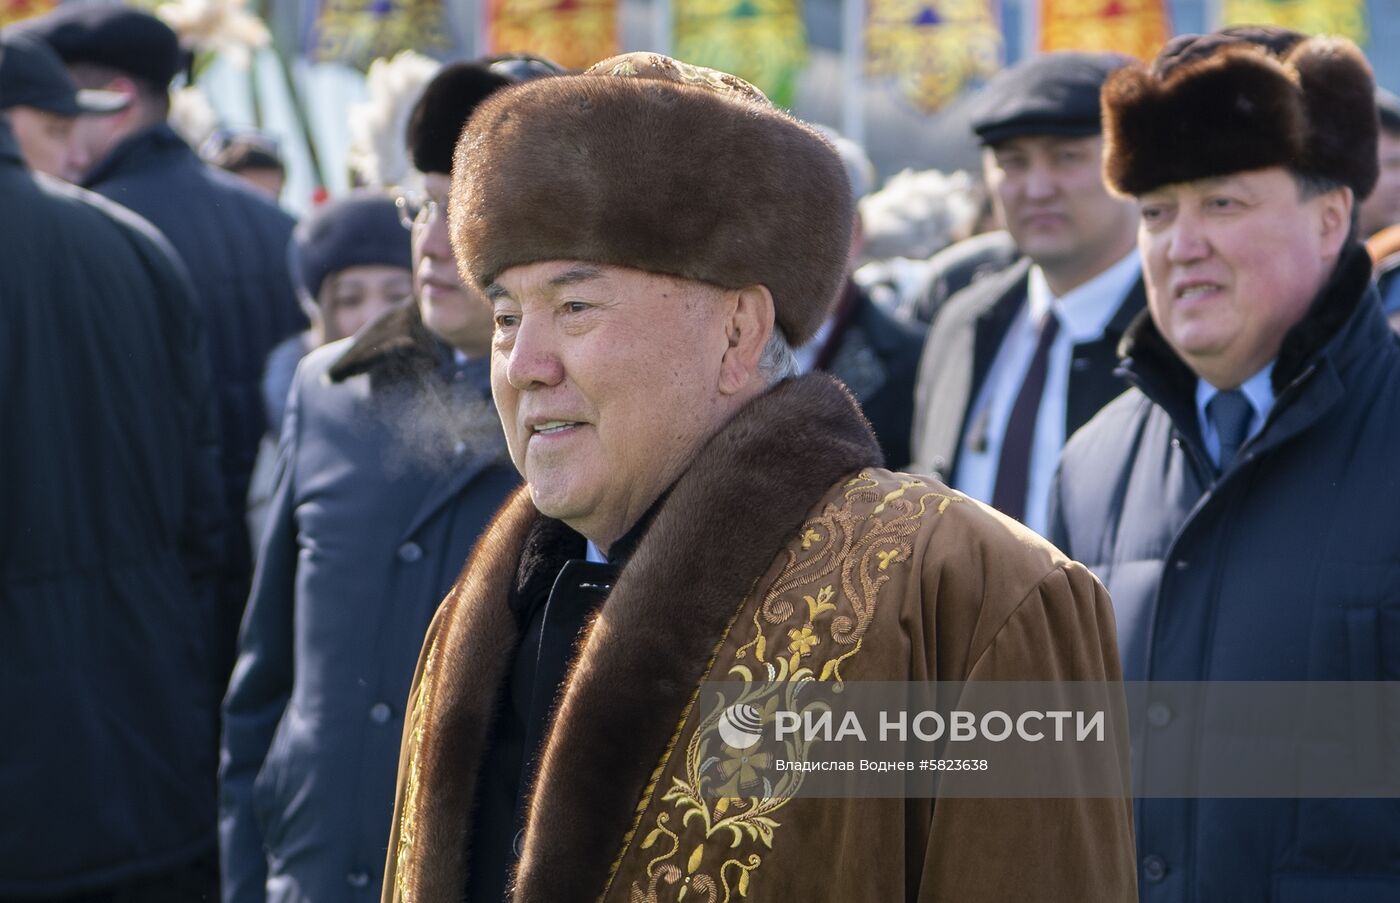 Н. Назарбаев и К.-Ж. Токаев посетили мероприятия в честь Наурыза